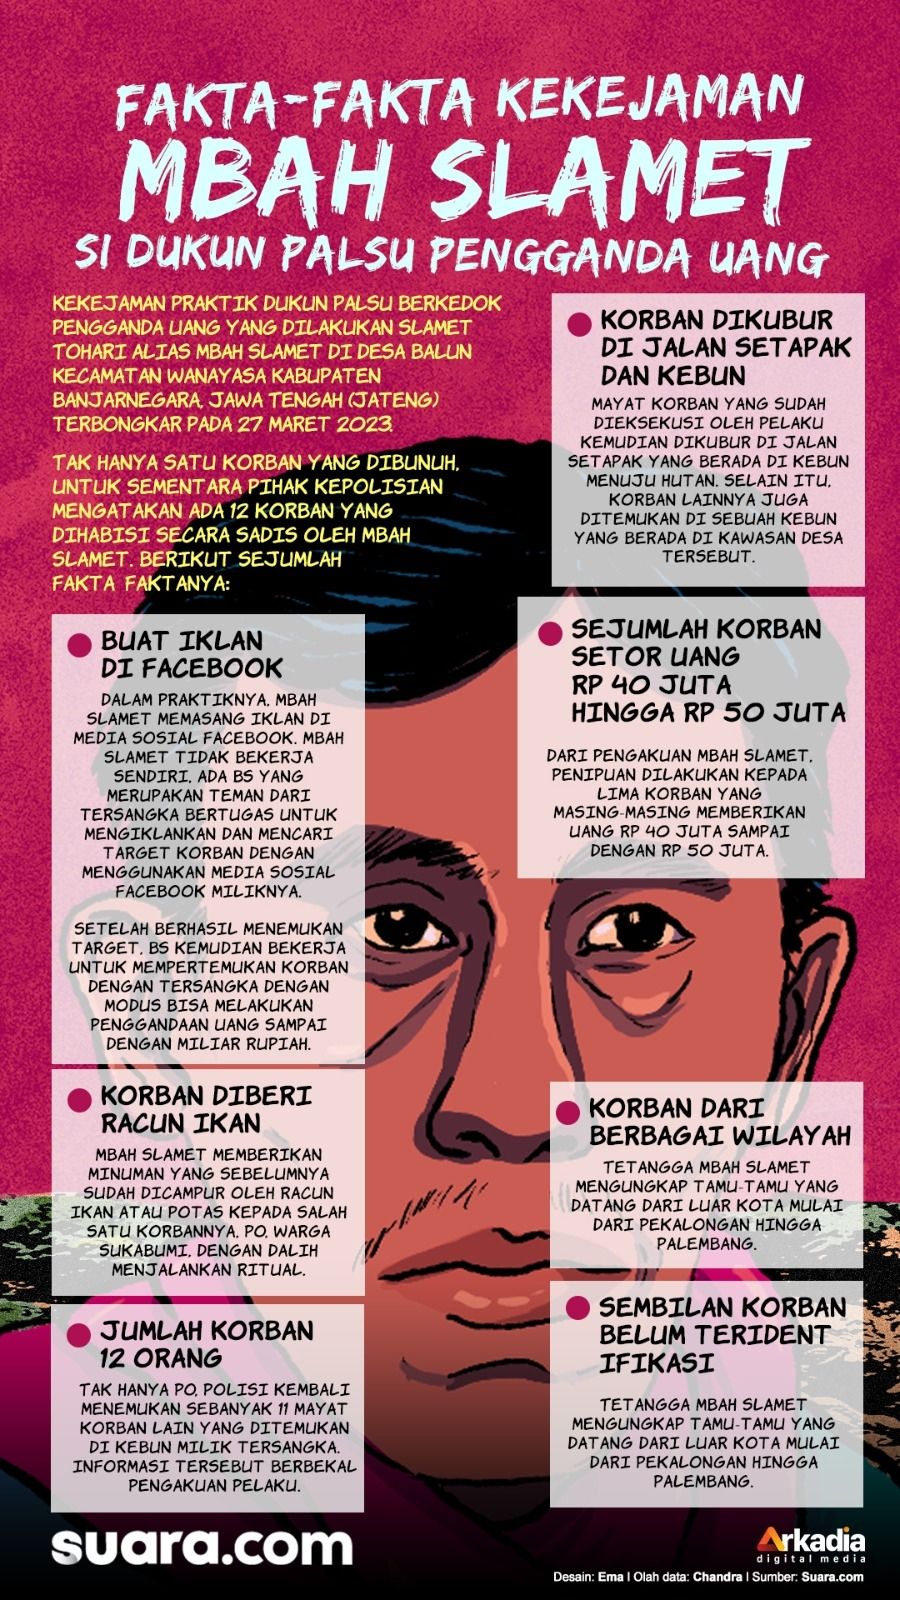 Infografis kekejaman Mbah Slamet dari Wanayasa. [Suara.com/Ema Rohima]